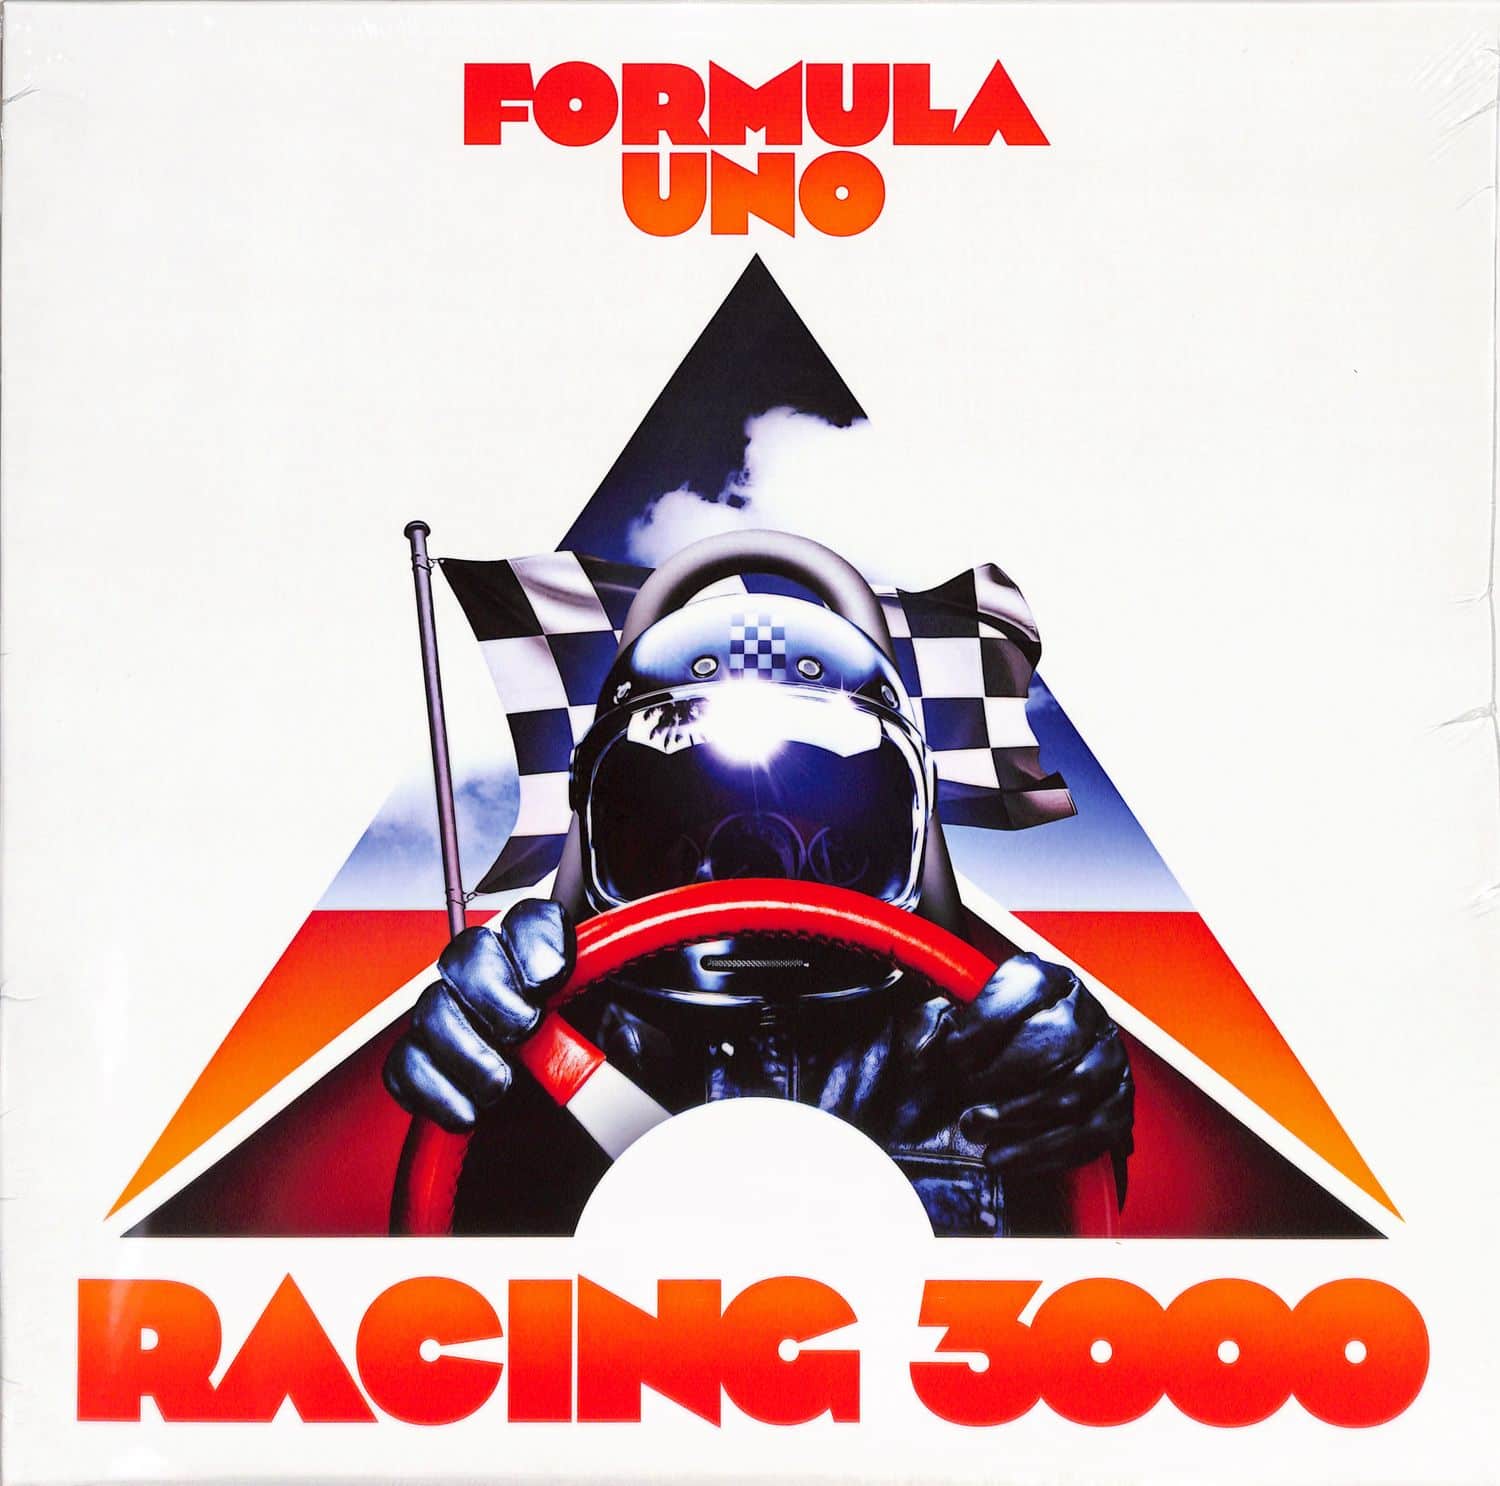 Formula Uno - RACING 3000 